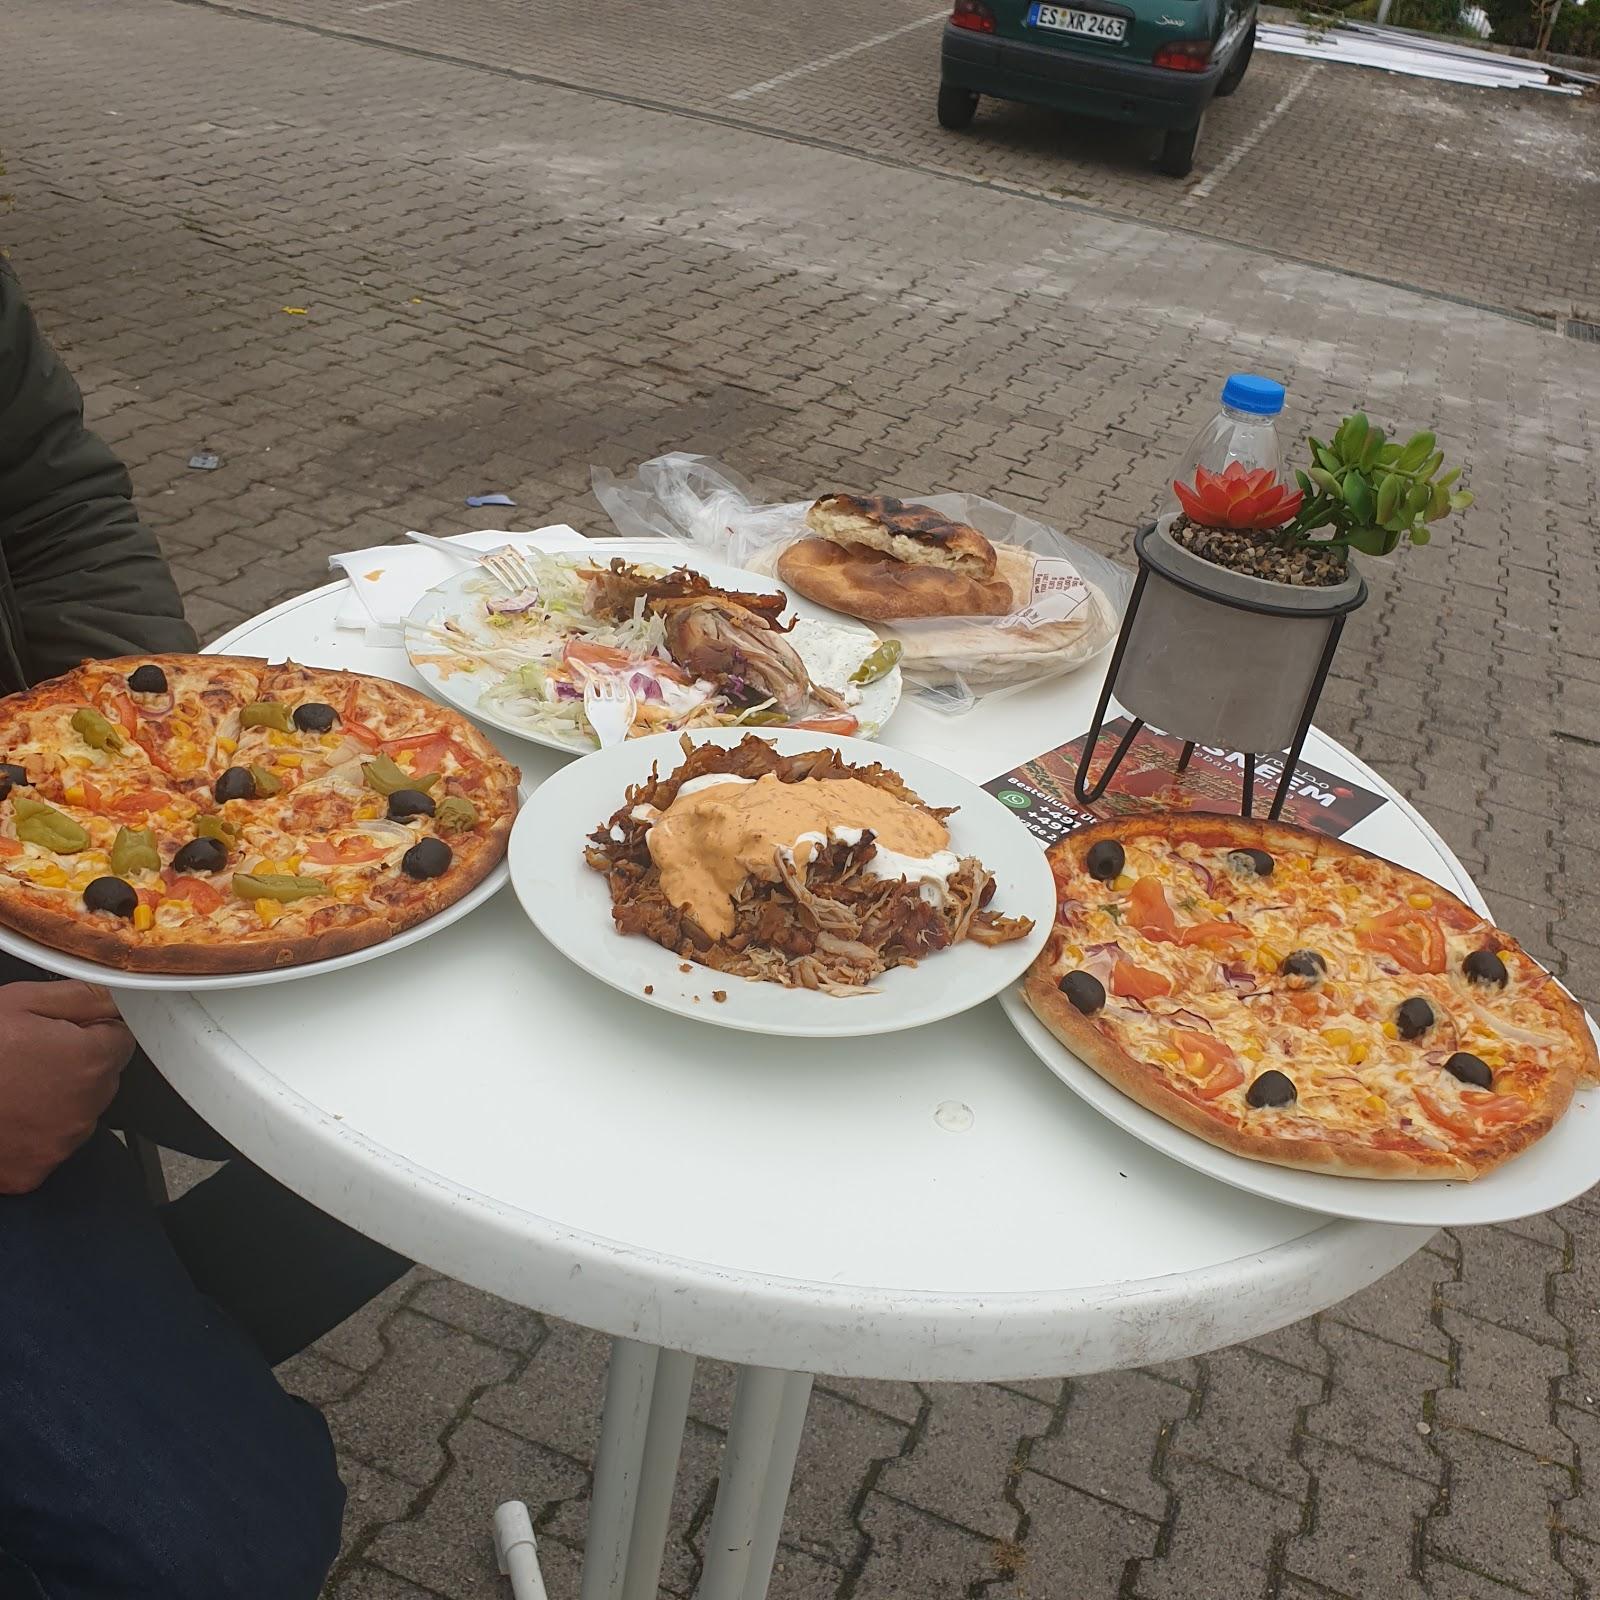 Restaurant "Tasneem kebap und pizza" in  Filderstadt